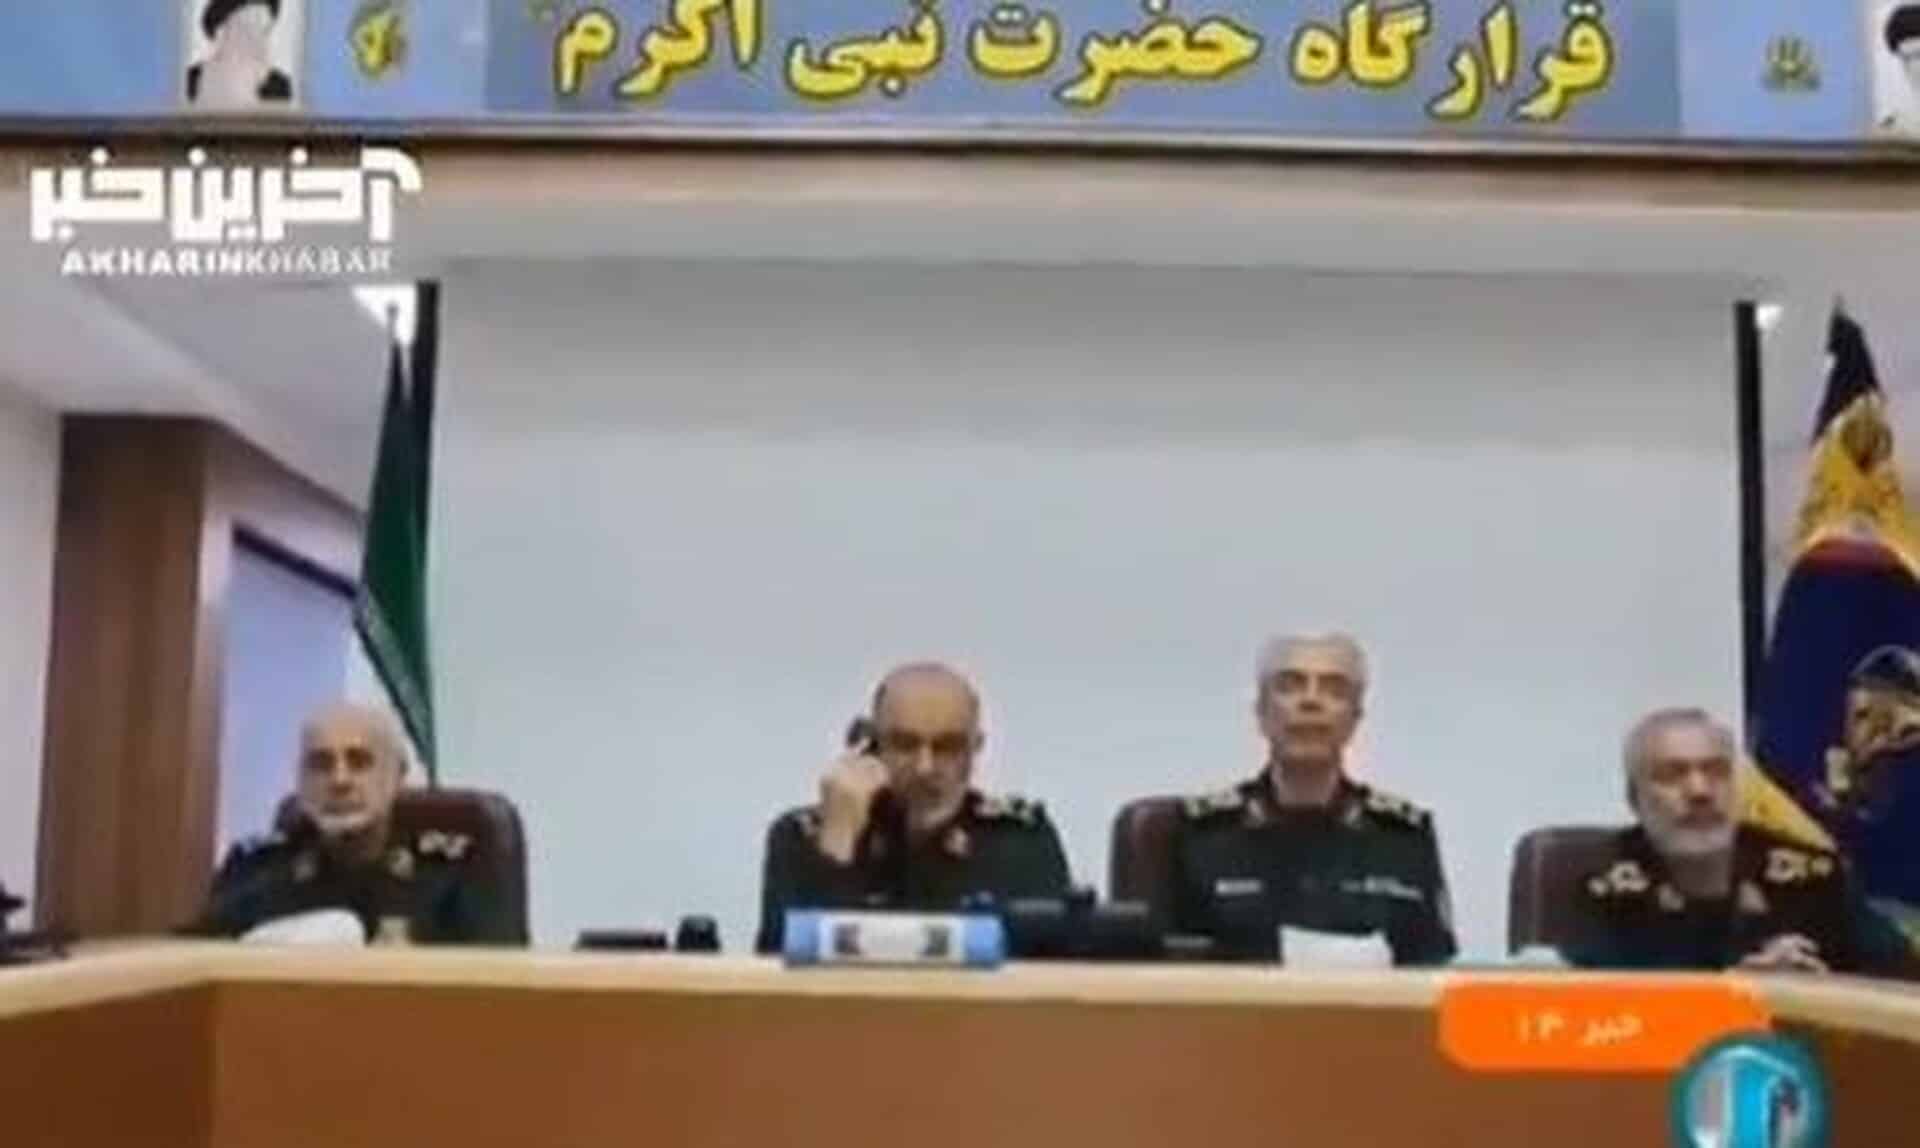 Βίντεο-από-καταφύγιο-στην-Τεχεράνη:-Ο-στρατηγός-Σαλαμί-διατάζει-επίθεση-στο-Ισραήλ